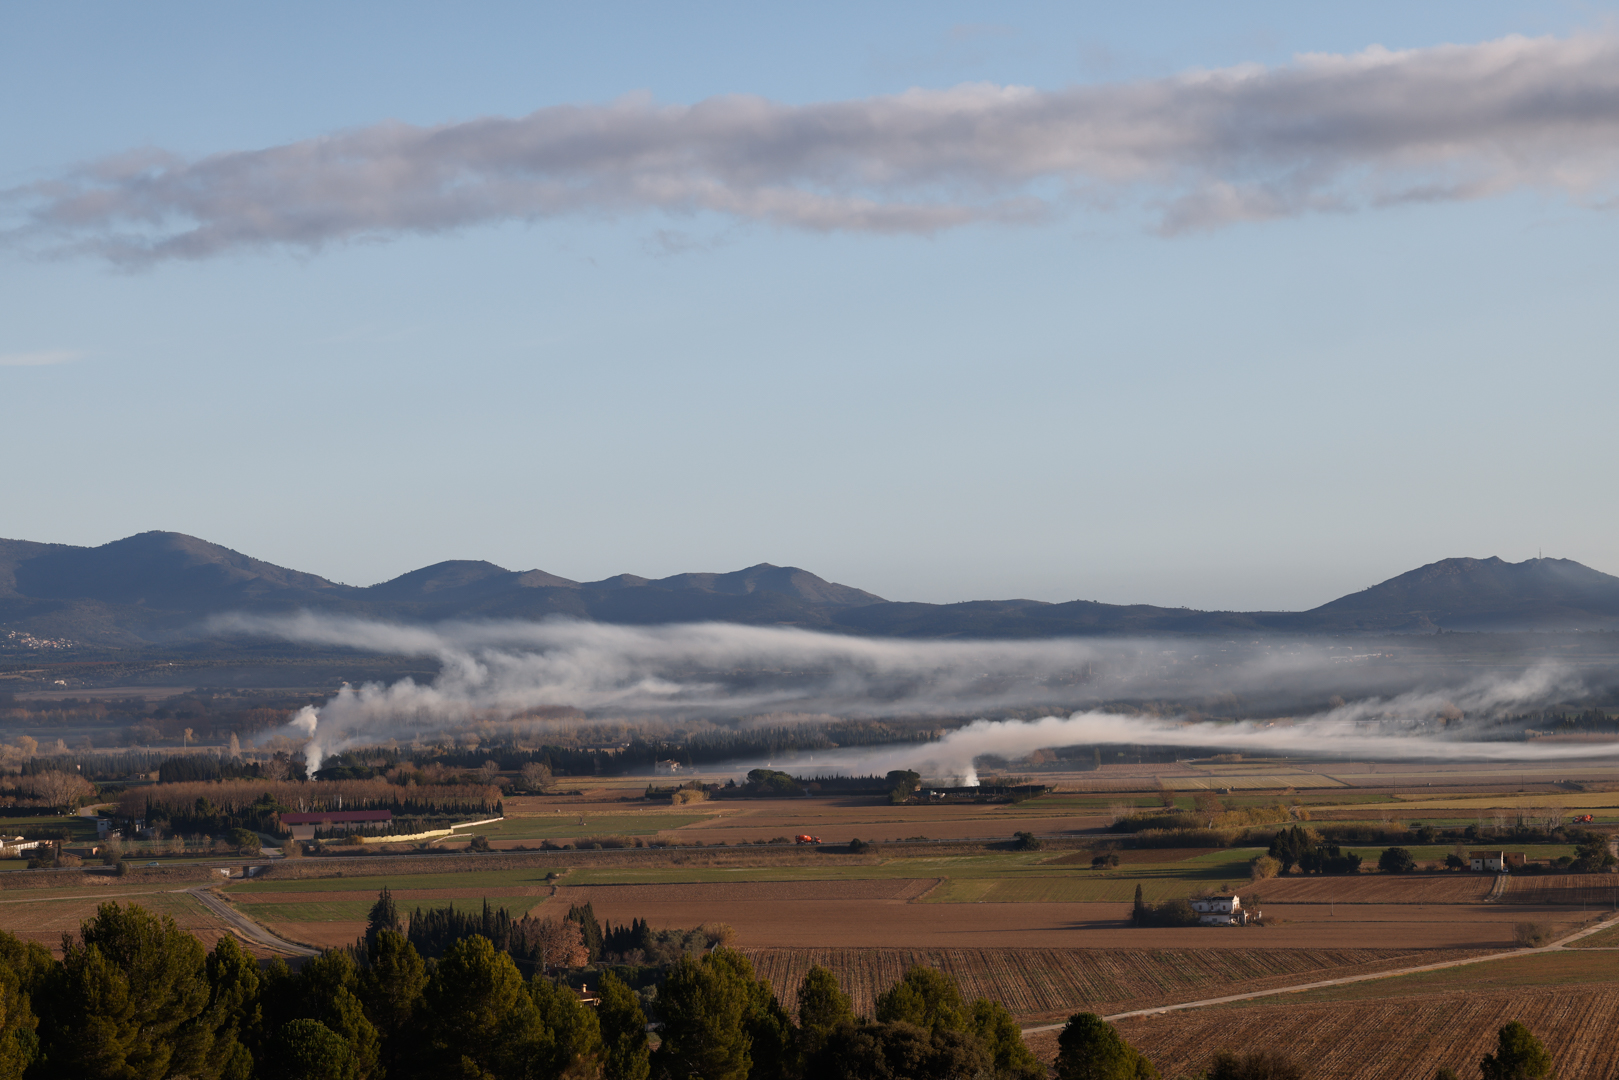 Foto de un bonito paisaje natural realizada durante una mañana por la zona de Figueras, Girona.